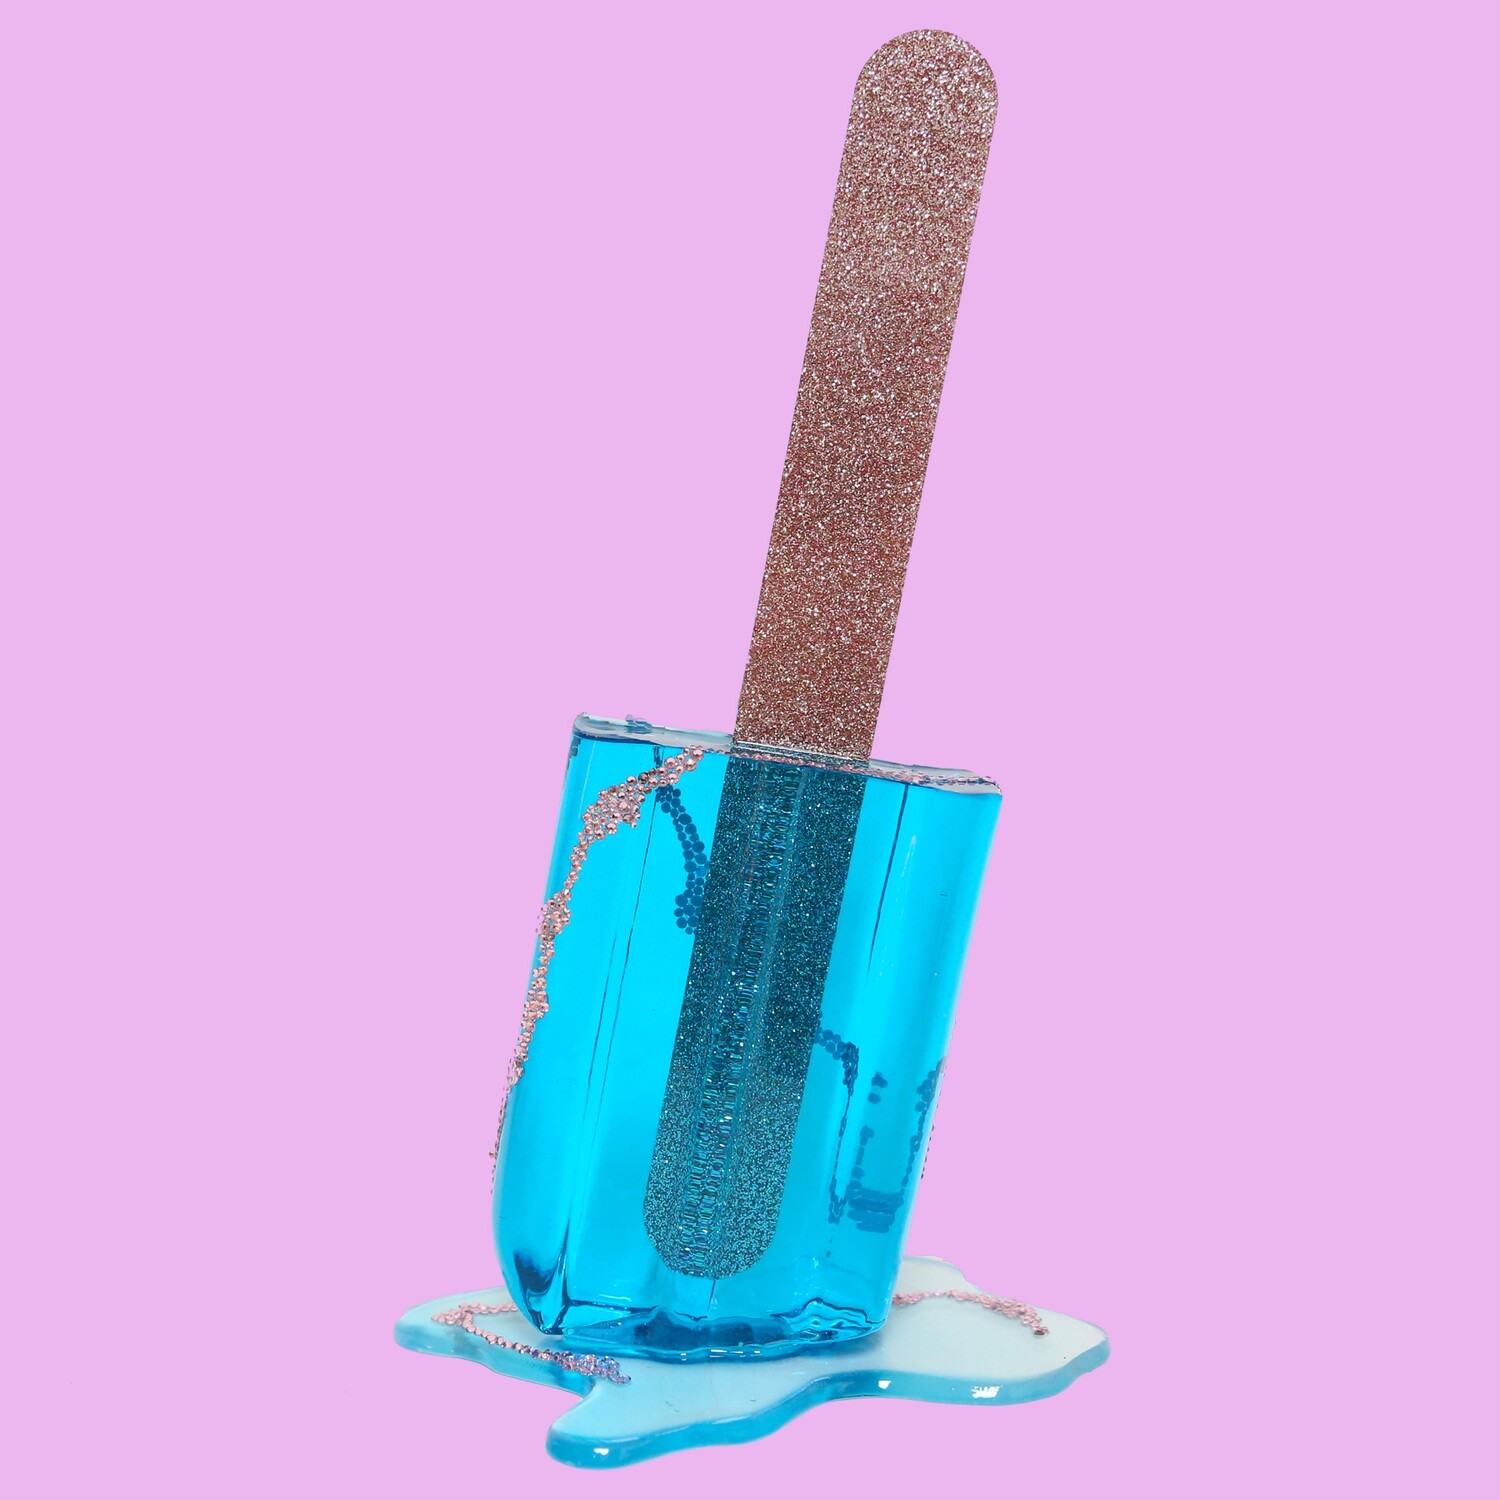 Melting Popsicle Art - Biggest Aqua Crystal Pop - Original Melting Pops